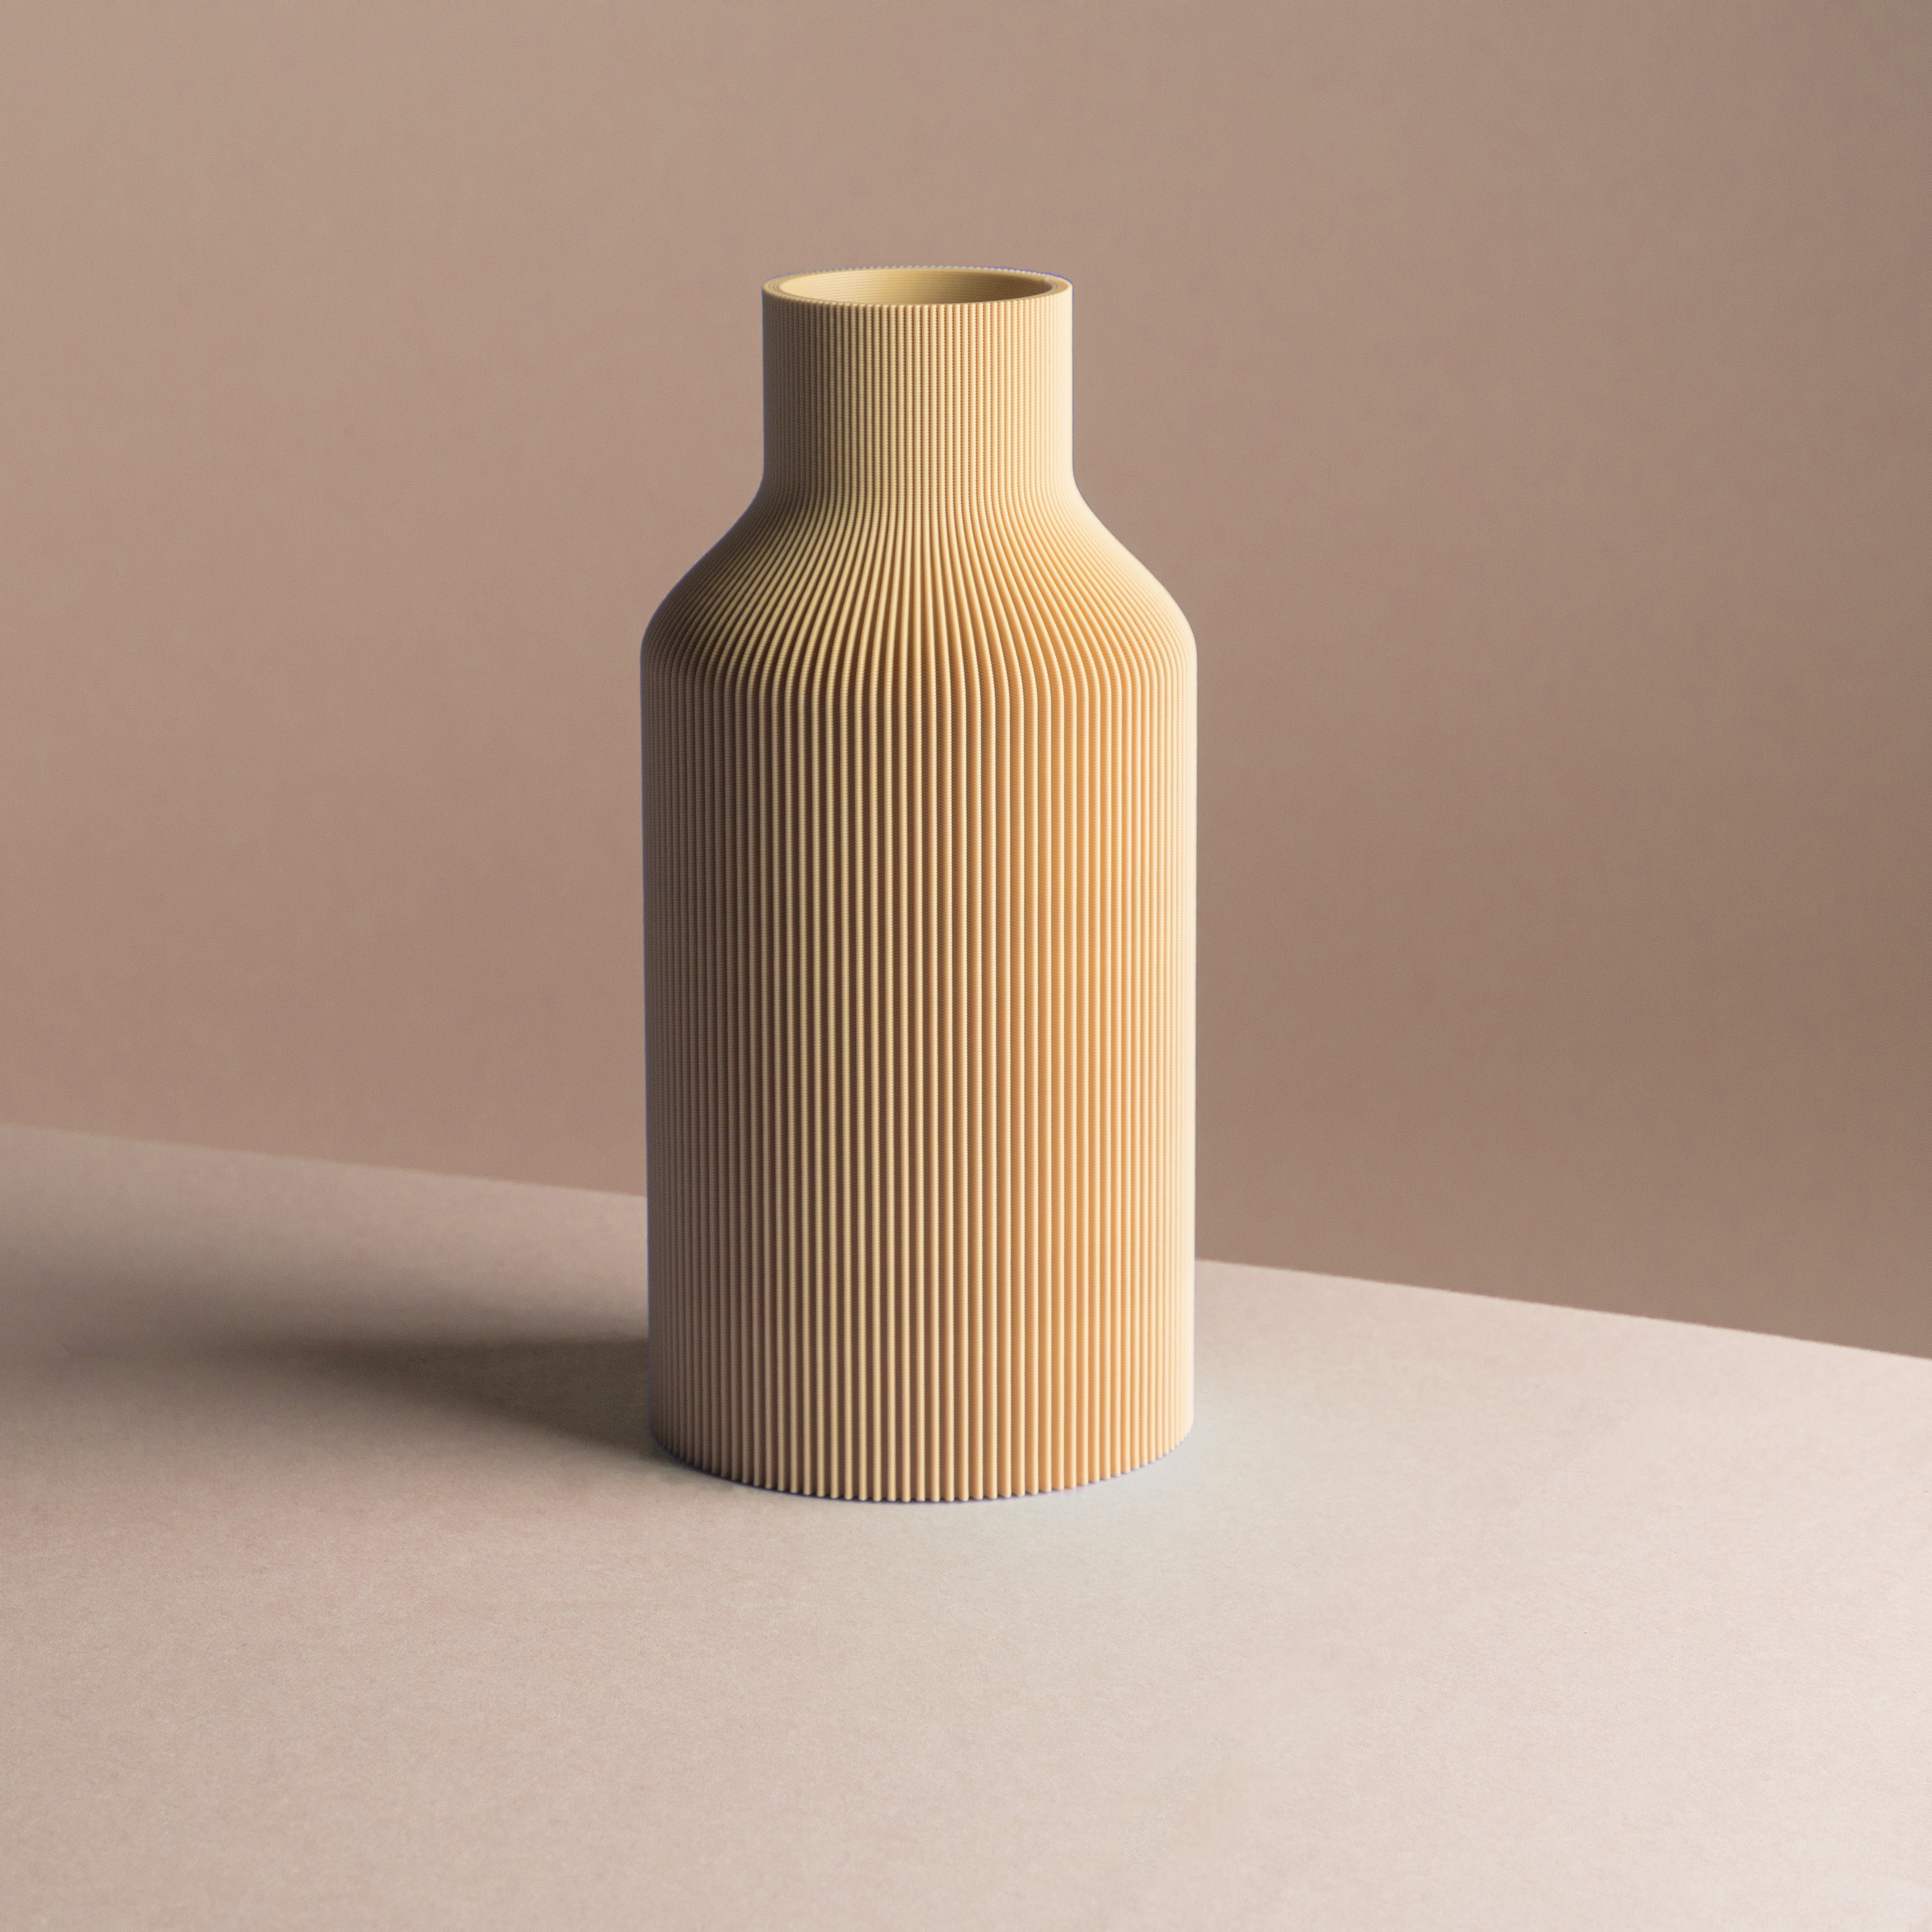 Dennismaass. Dekovase FLASCHE, 3D Druck, wundervolle Rillen-Optik, für Blumen aller Art, dekorative Vase aus dem 3D Drucker beige